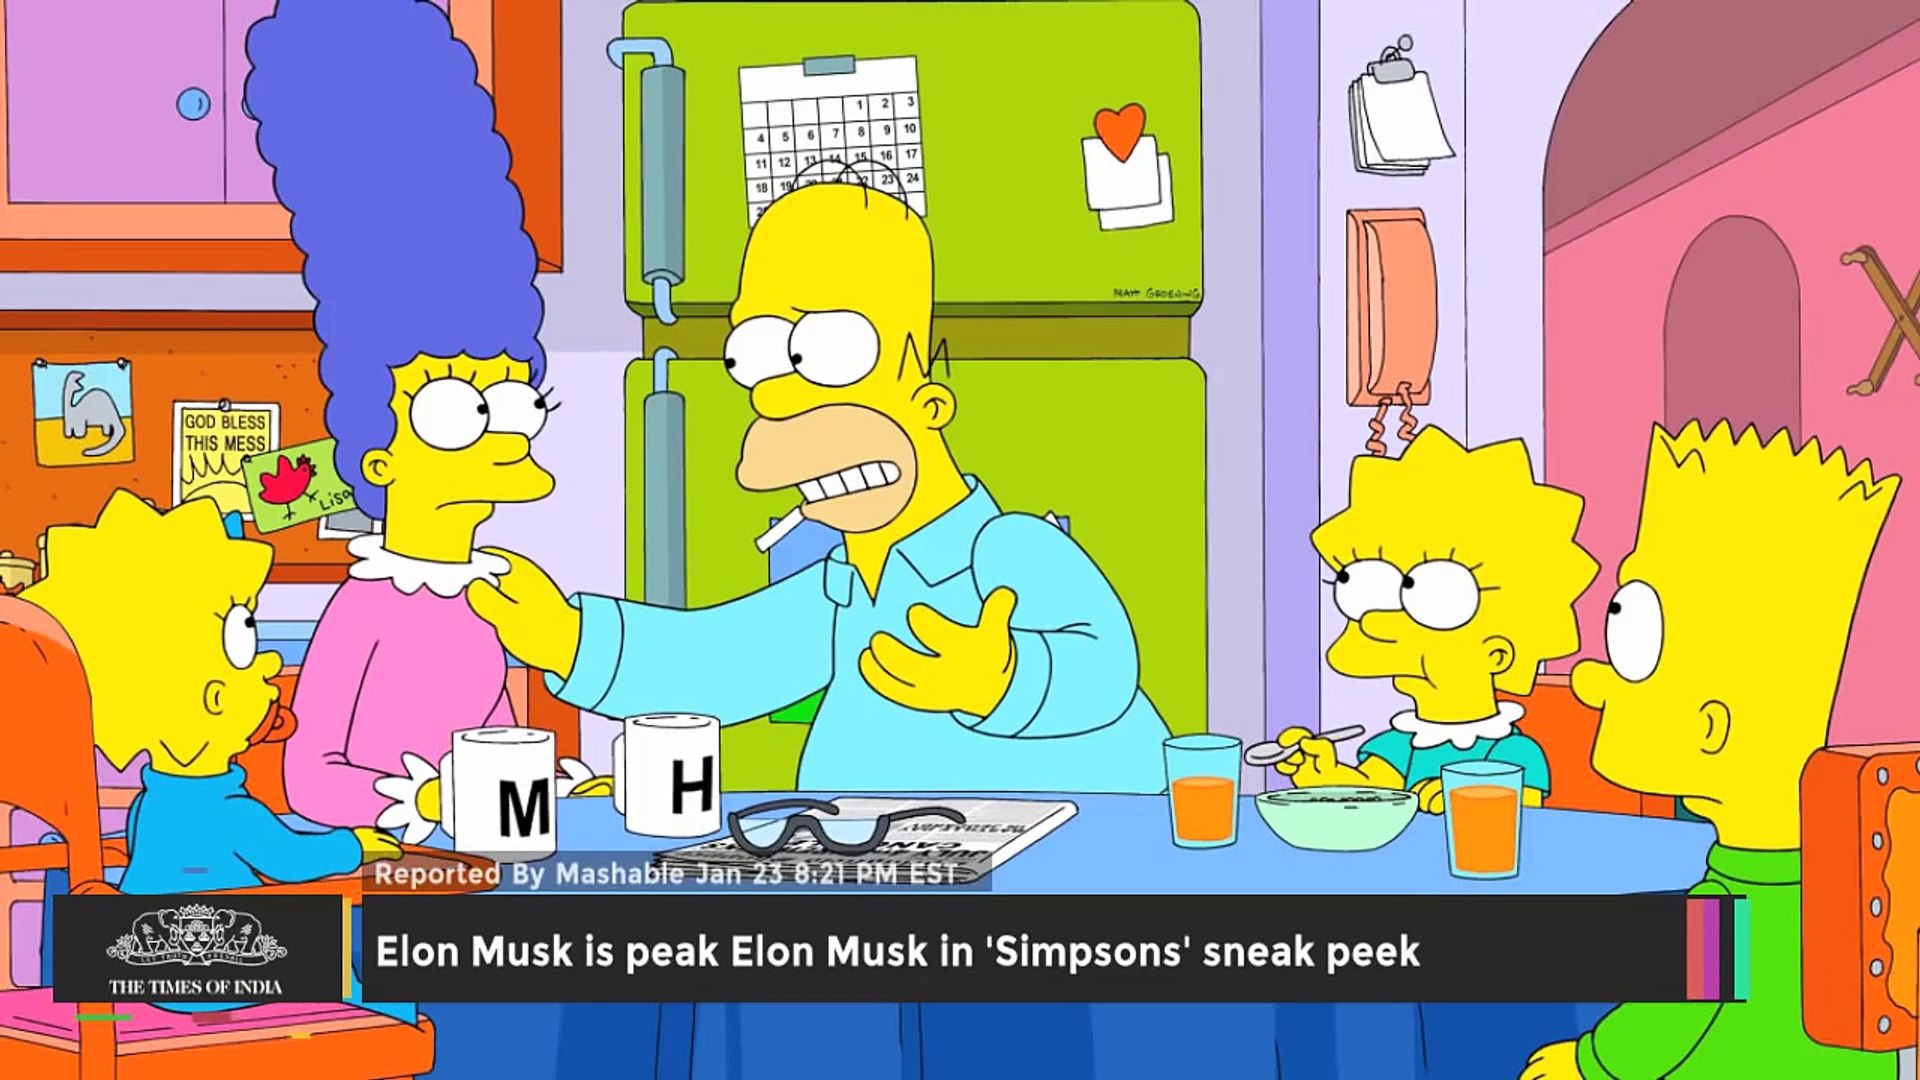 Elon Musk is Peak Elon Musk in 'Simpsons' Sneak Peek - TOI